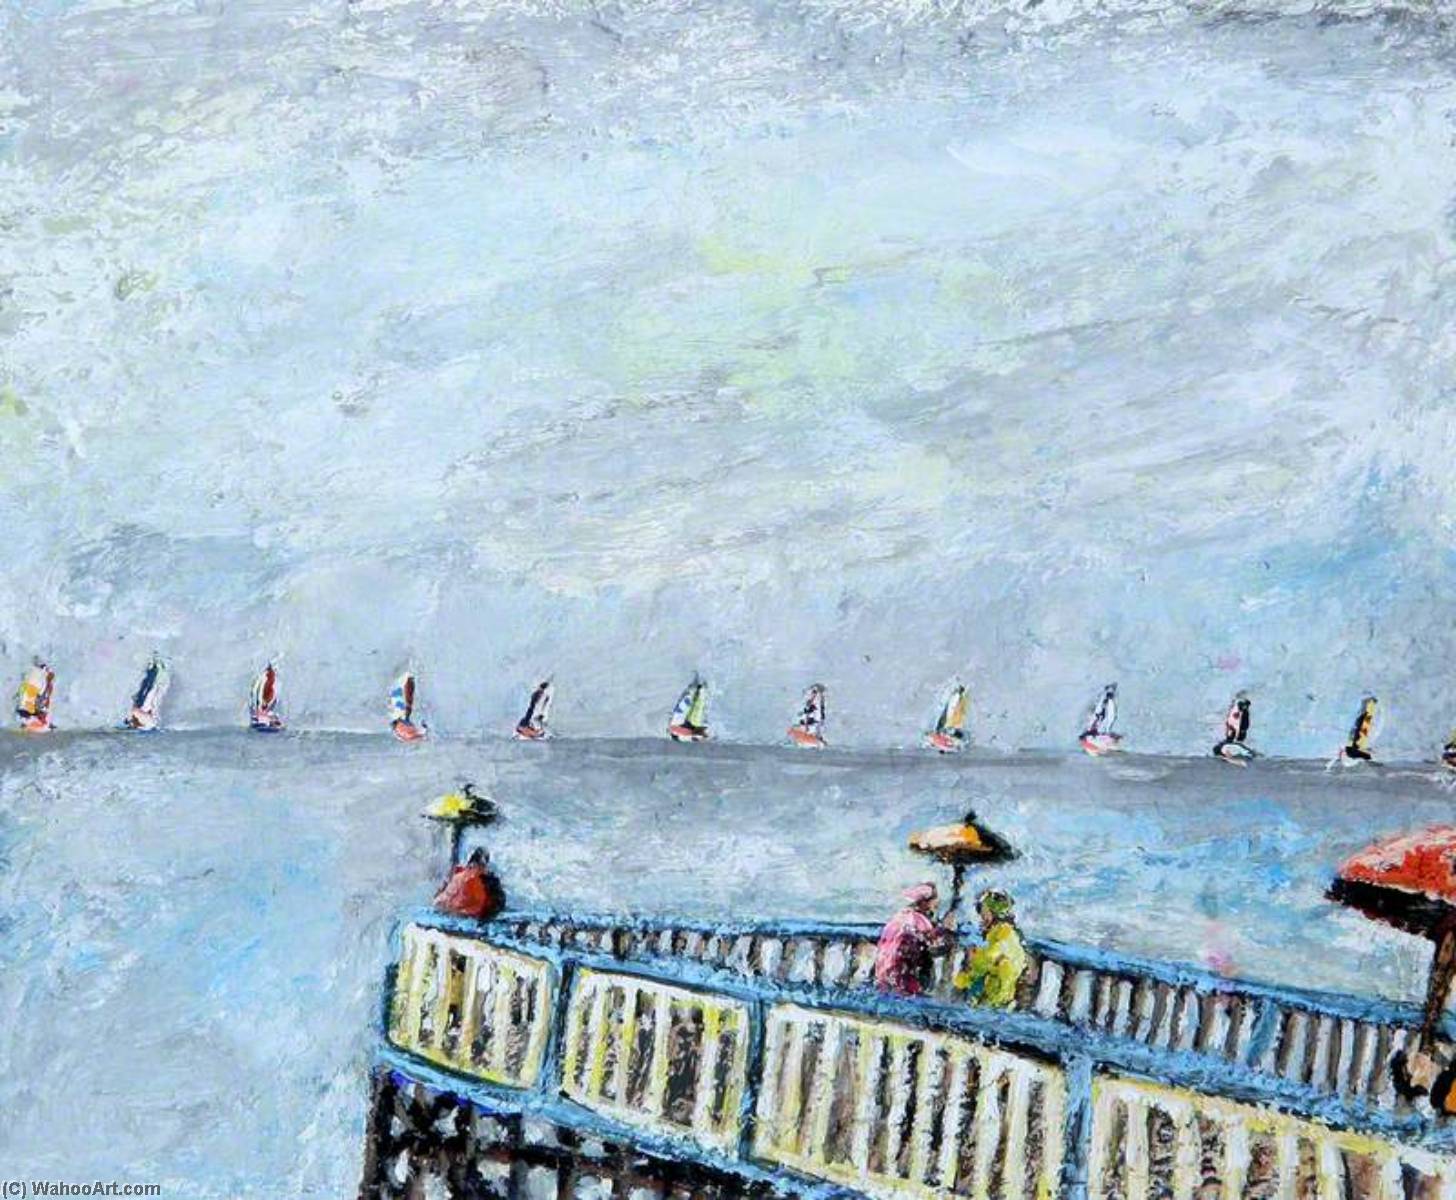 WikiOO.org - Encyclopedia of Fine Arts - Lukisan, Artwork Emrys Williams - On the Pier II